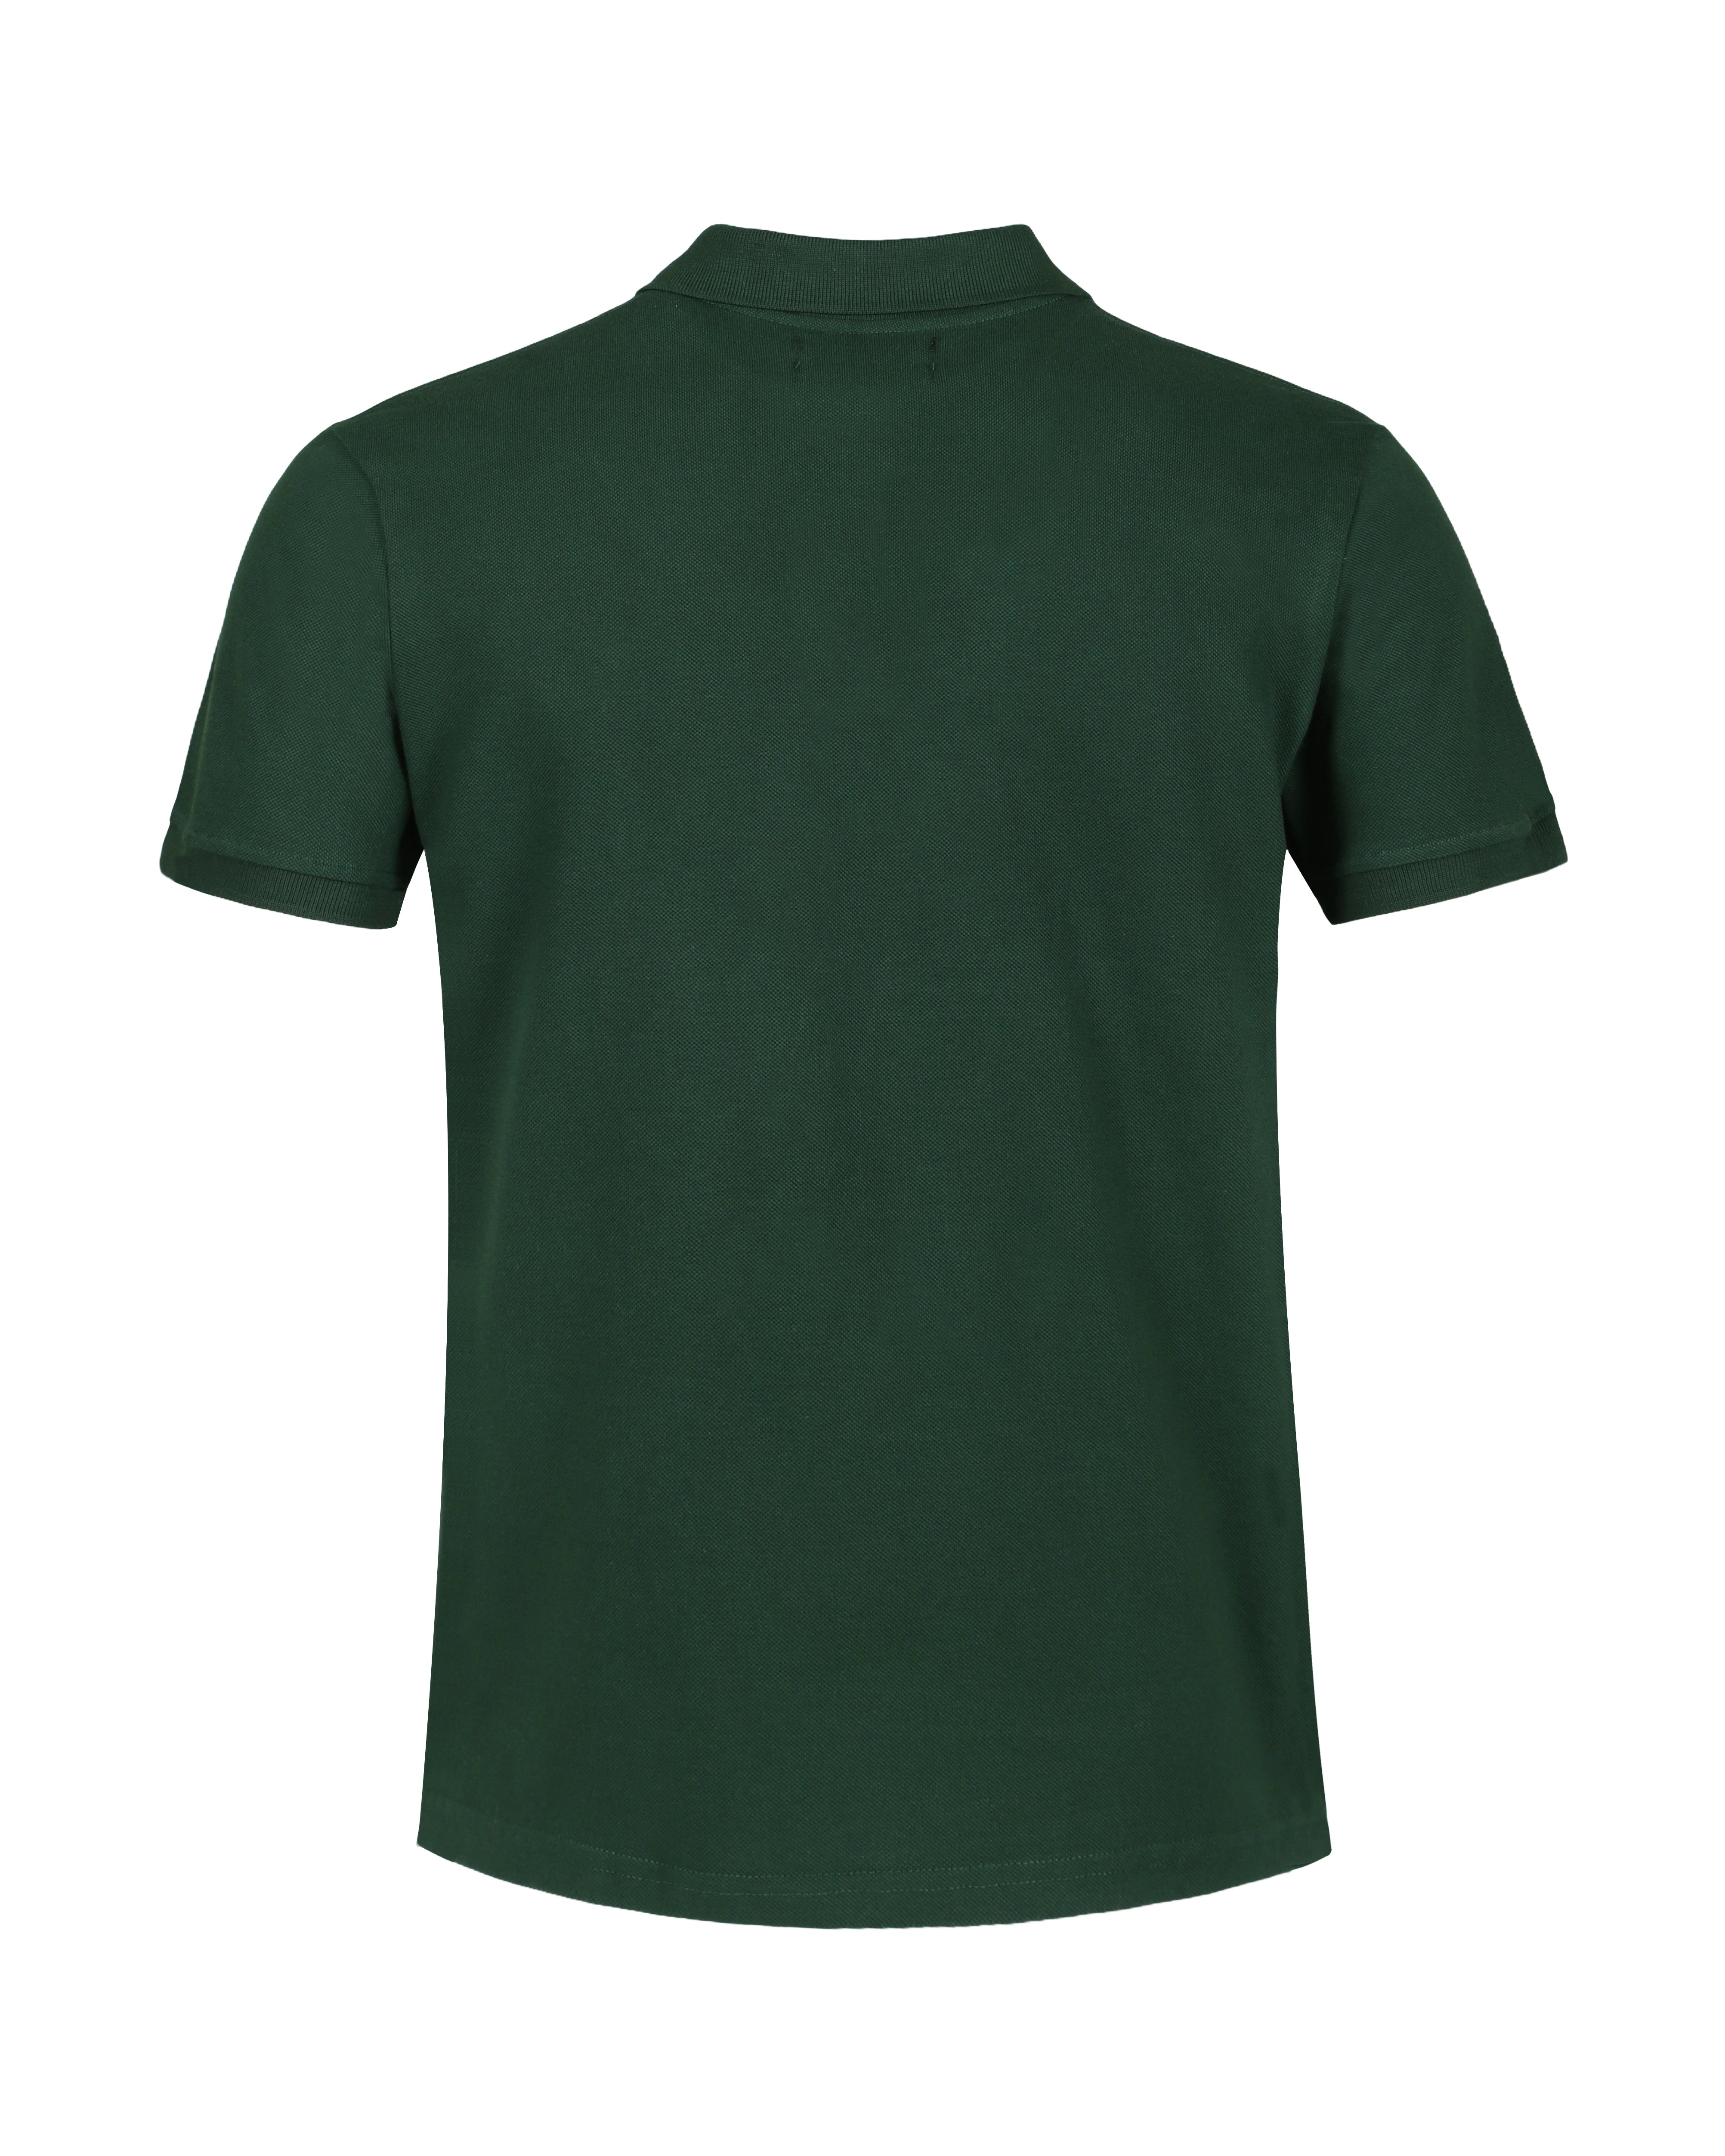 Green Color Premium Cotton T-Shirt